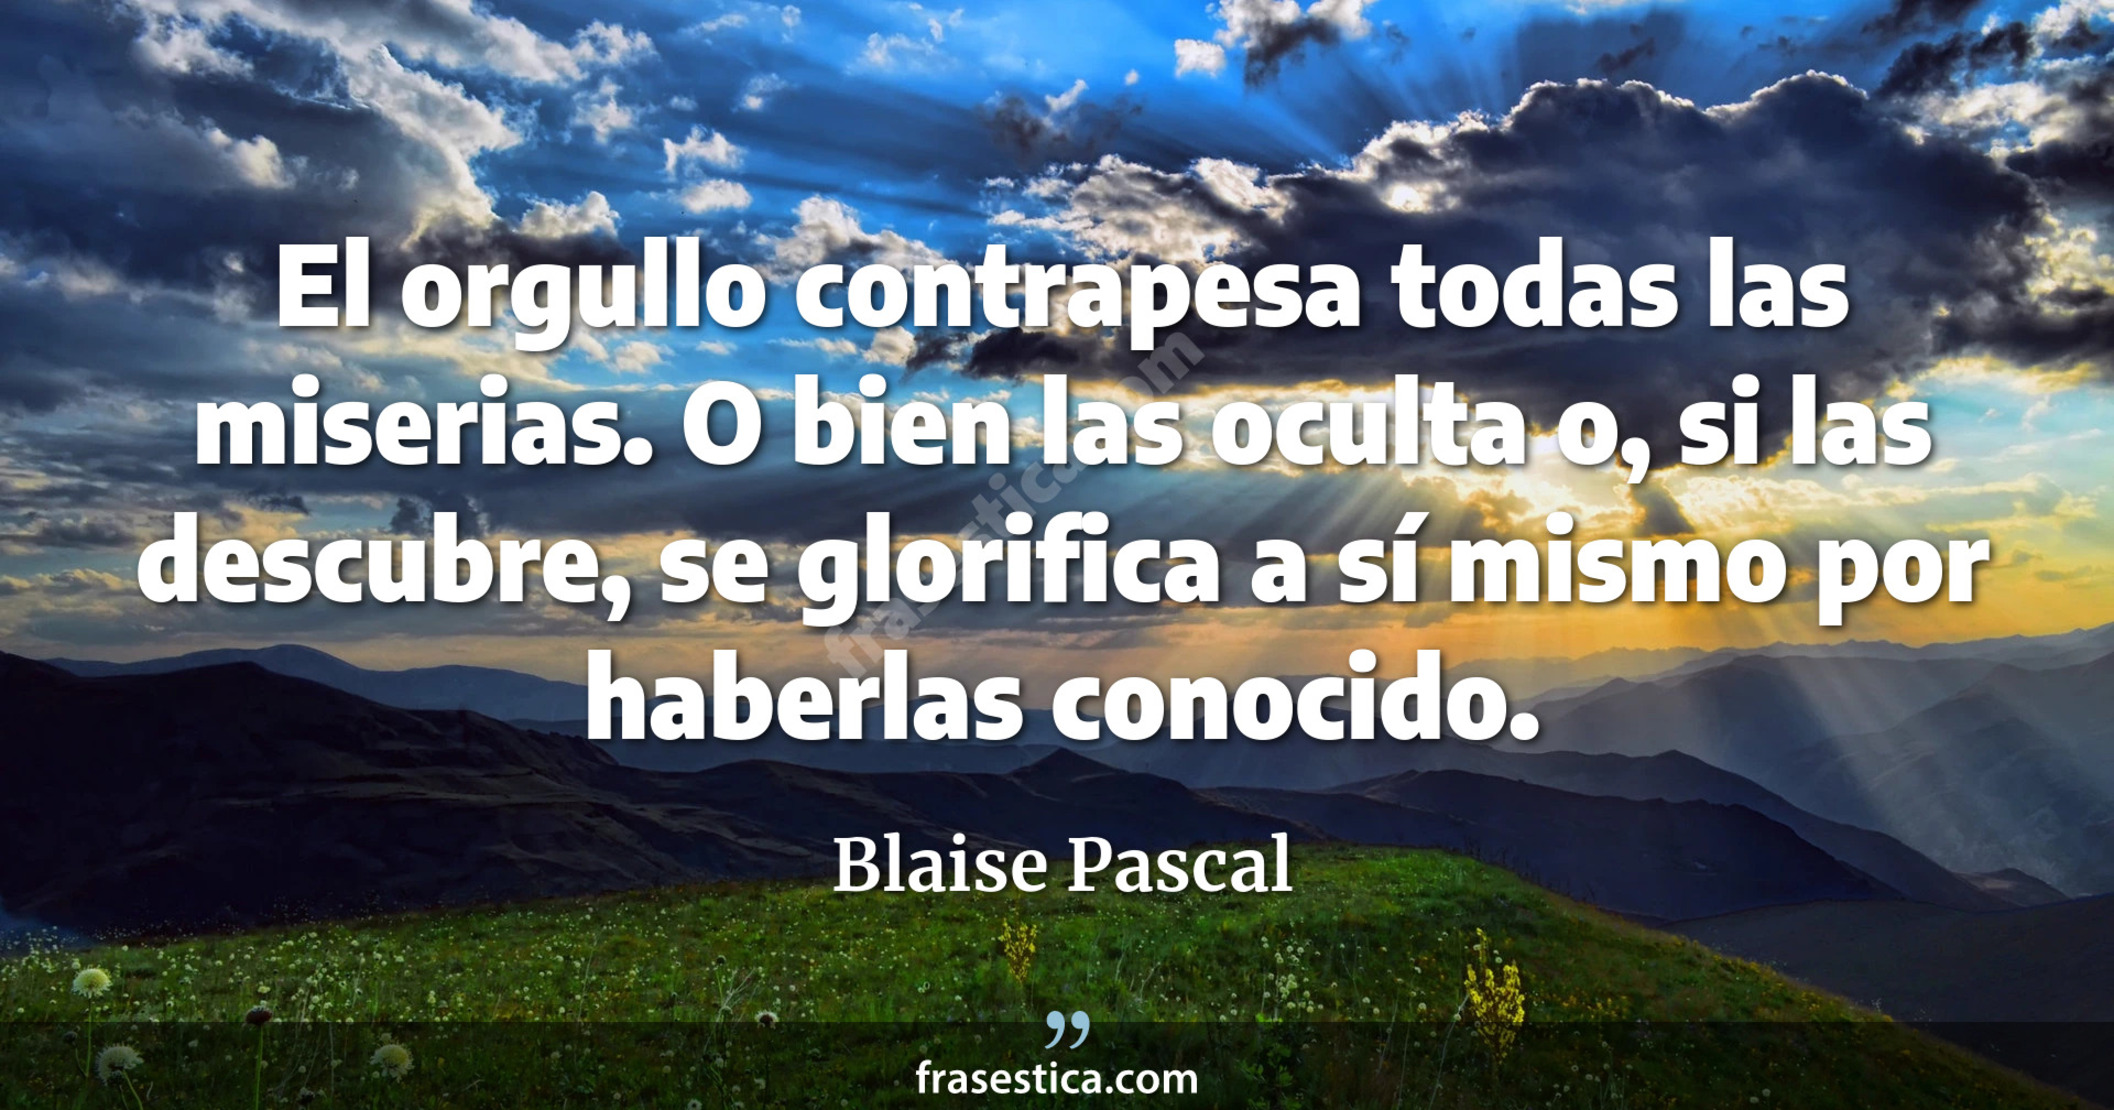 El orgullo contrapesa todas las miserias. O bien las oculta o, si las descubre, se glorifica a sí mismo por haberlas conocido. - Blaise Pascal